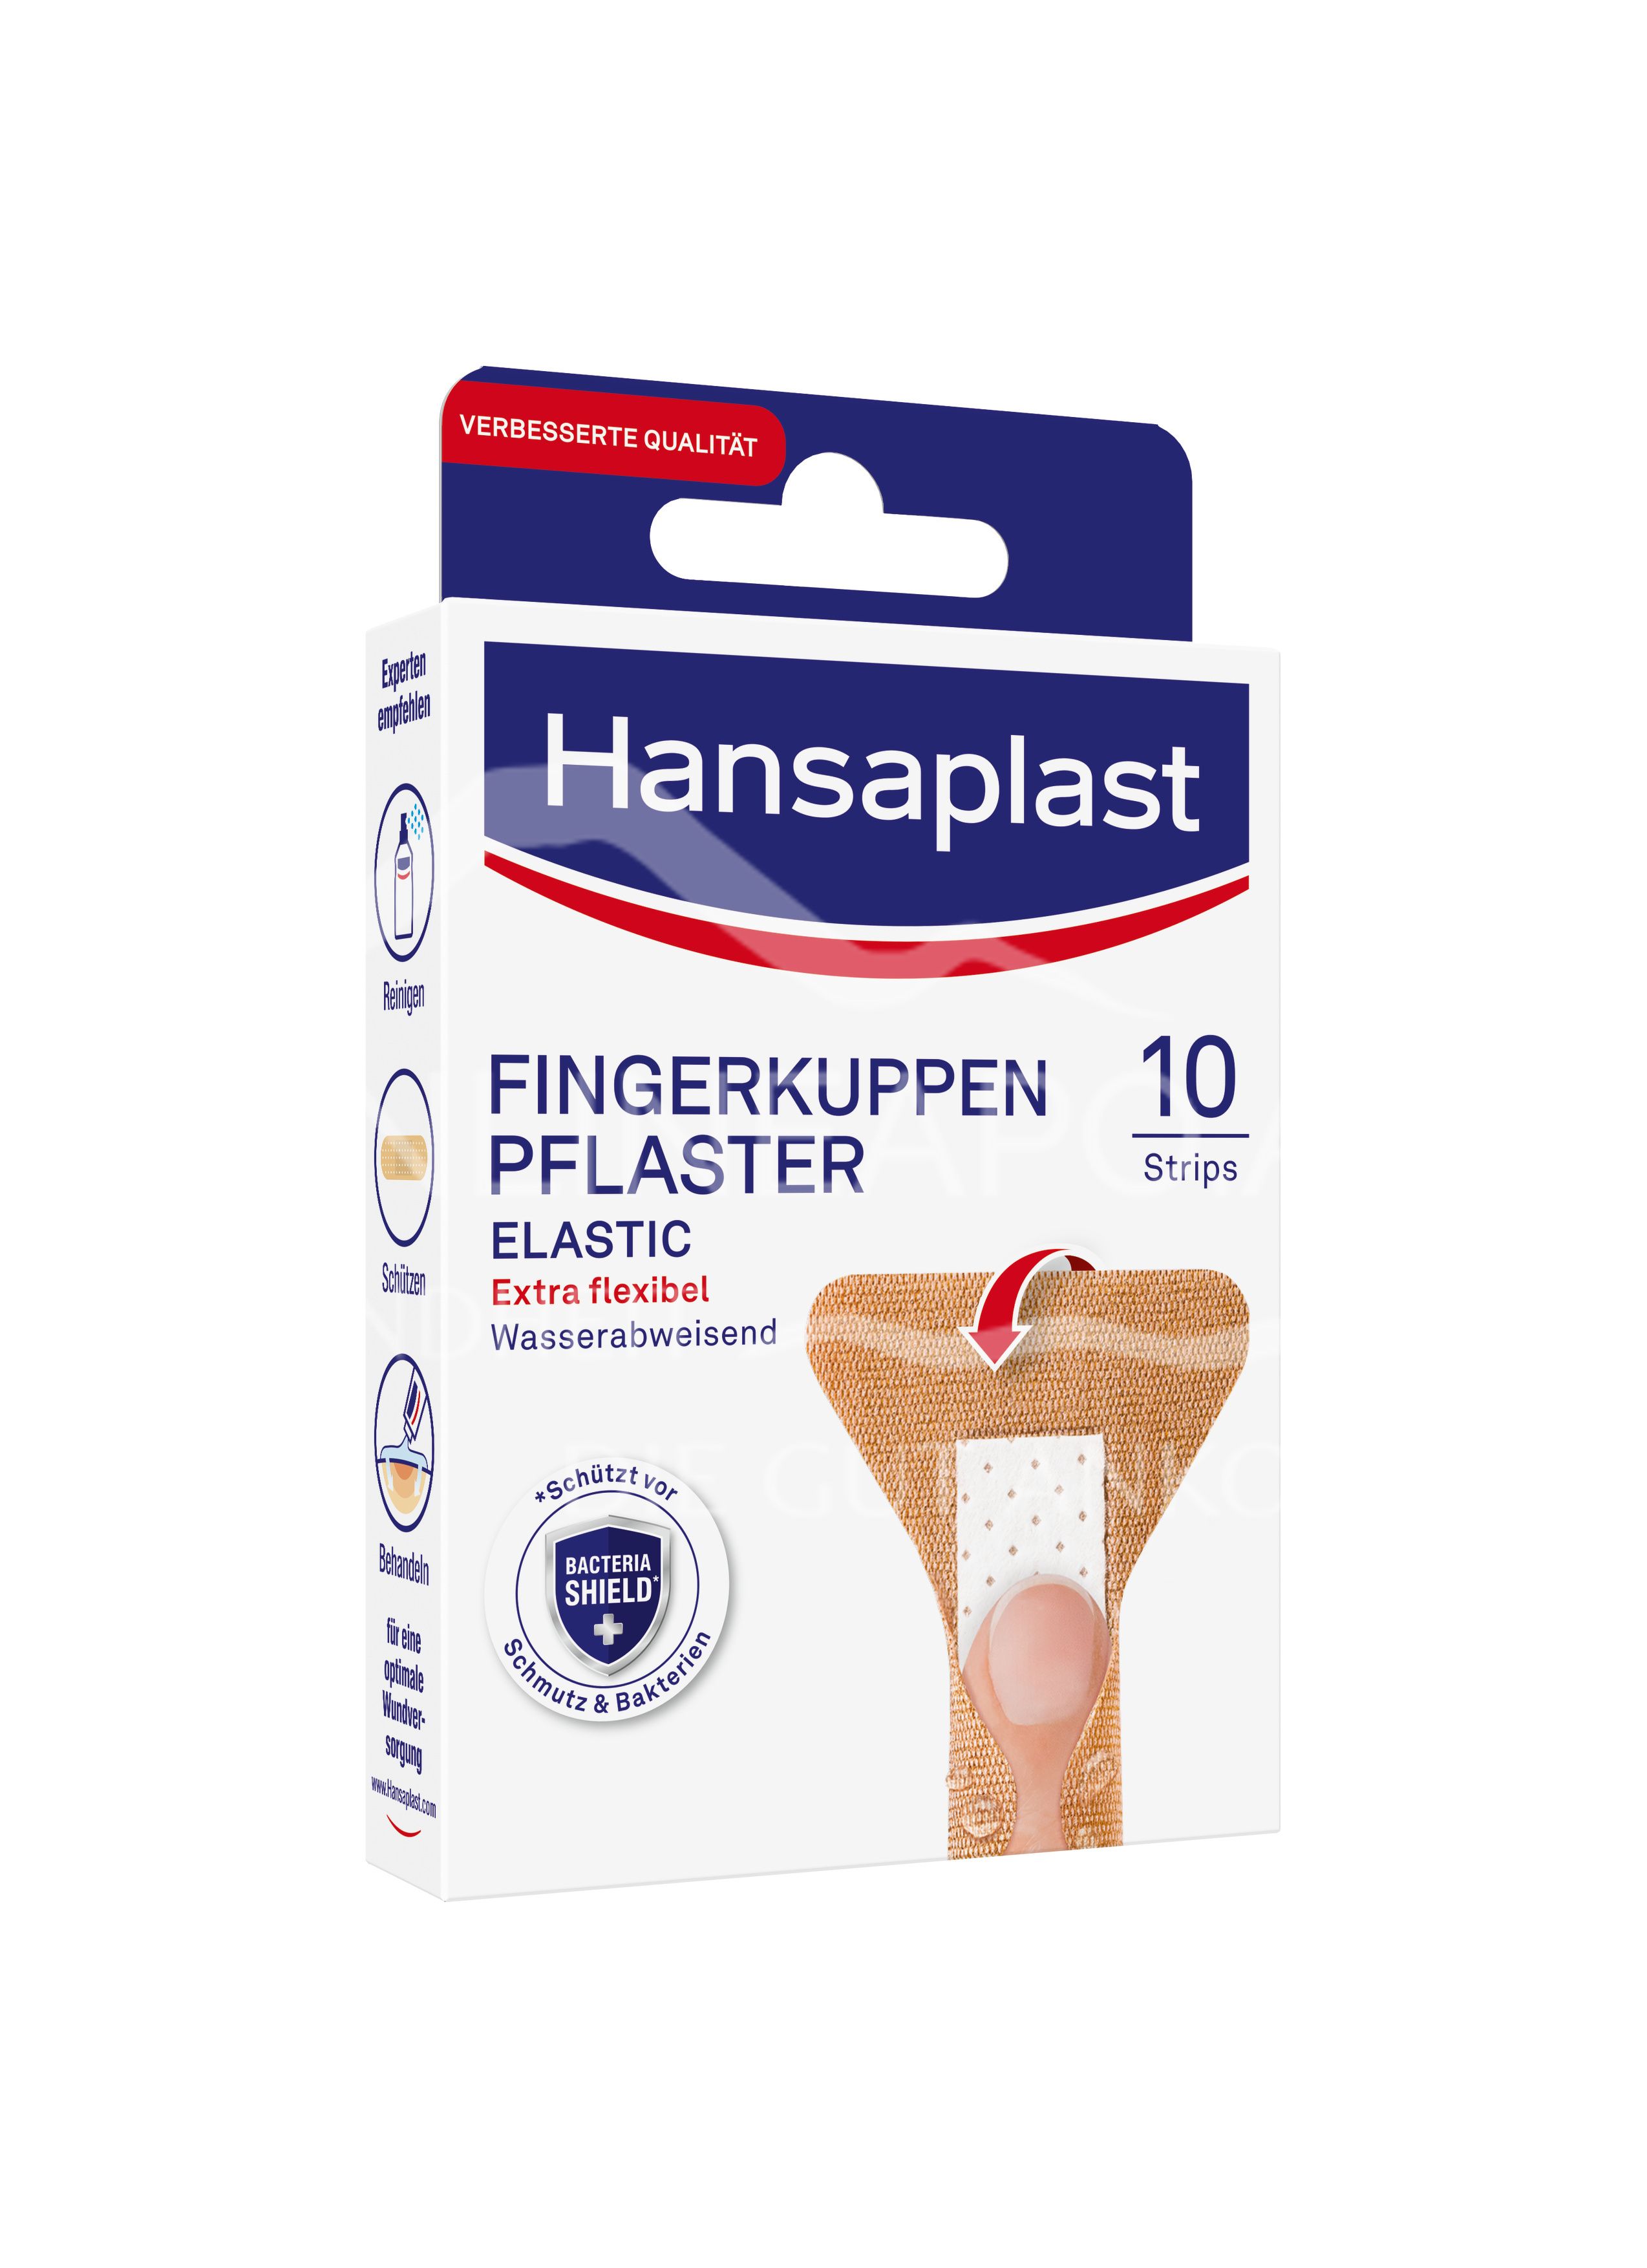 Hansaplast Elastic Fingerkuppen Pflaster Strips